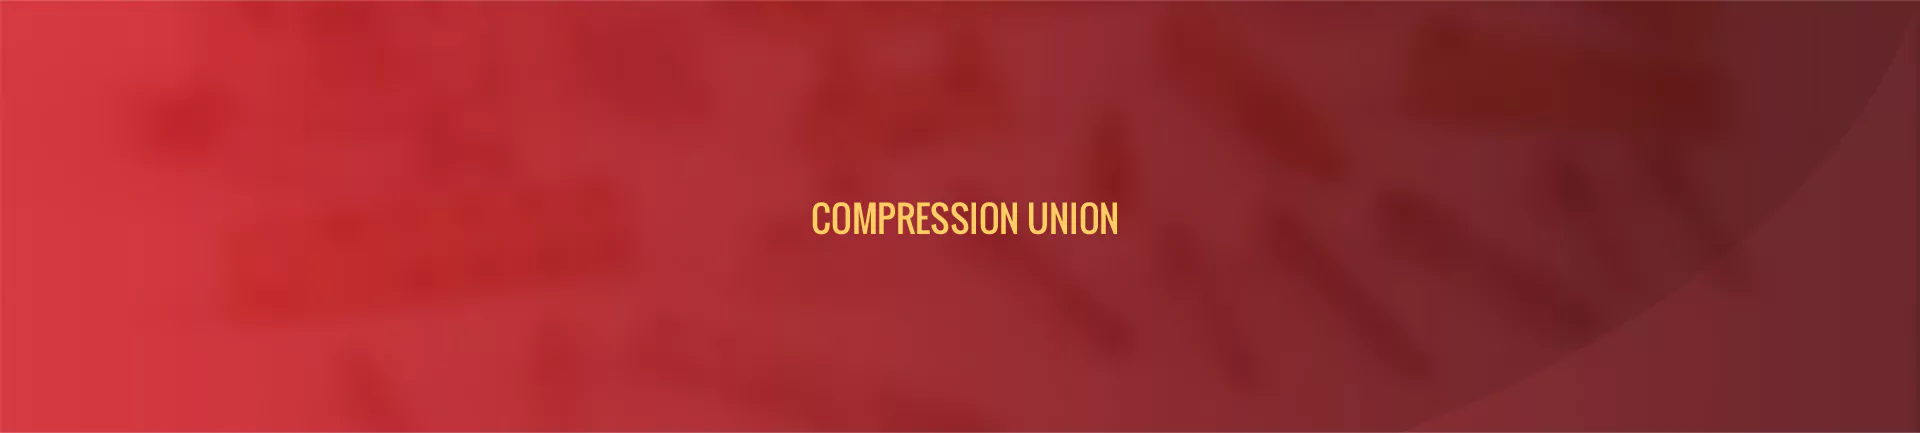 compression-union-banner